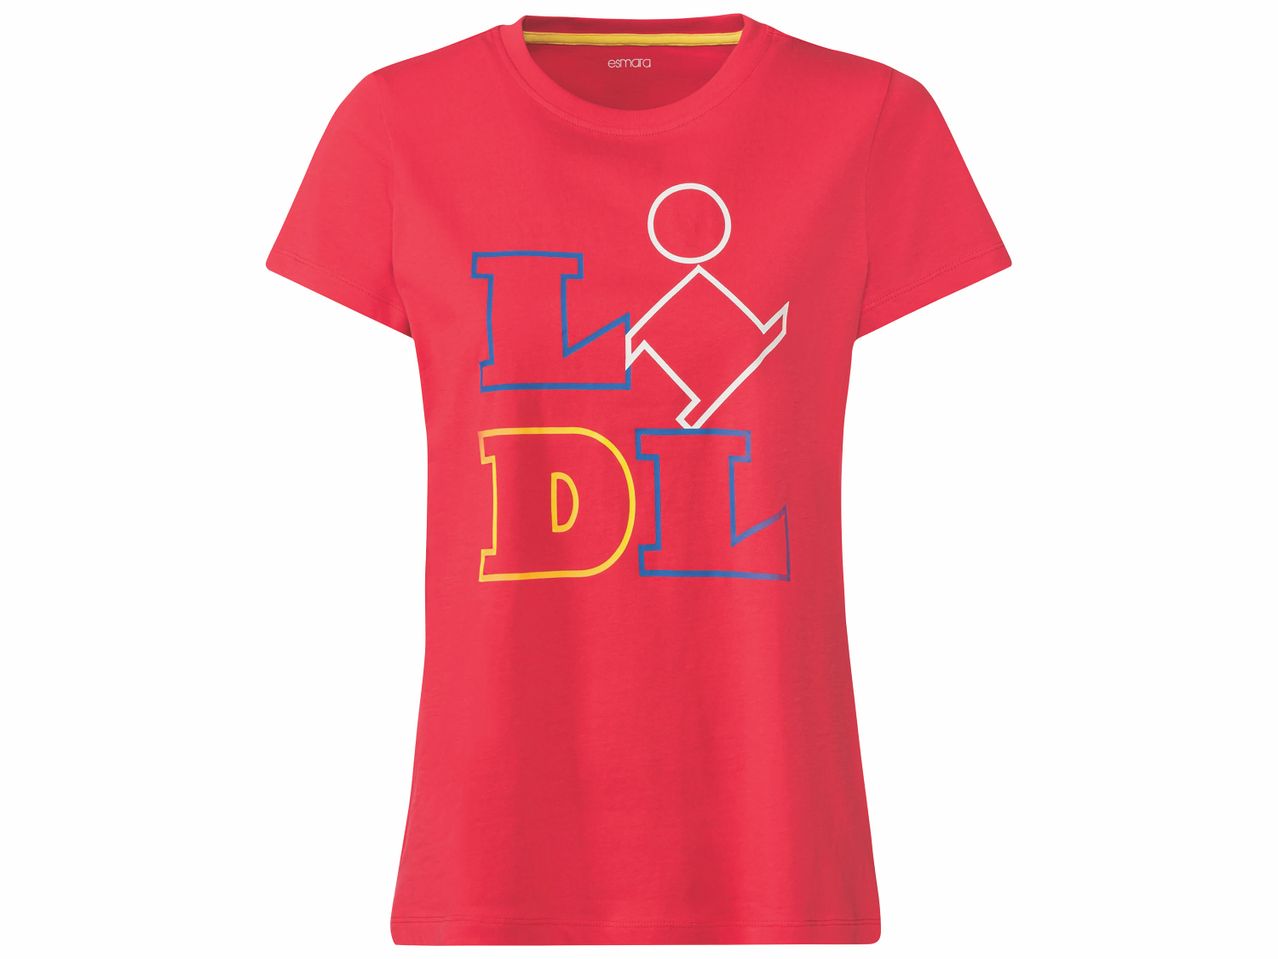 T-shirt Lidl homme ou femme , prezzo 5.99 EUR 
T-shirt Lidl homme ou femme 
- ...